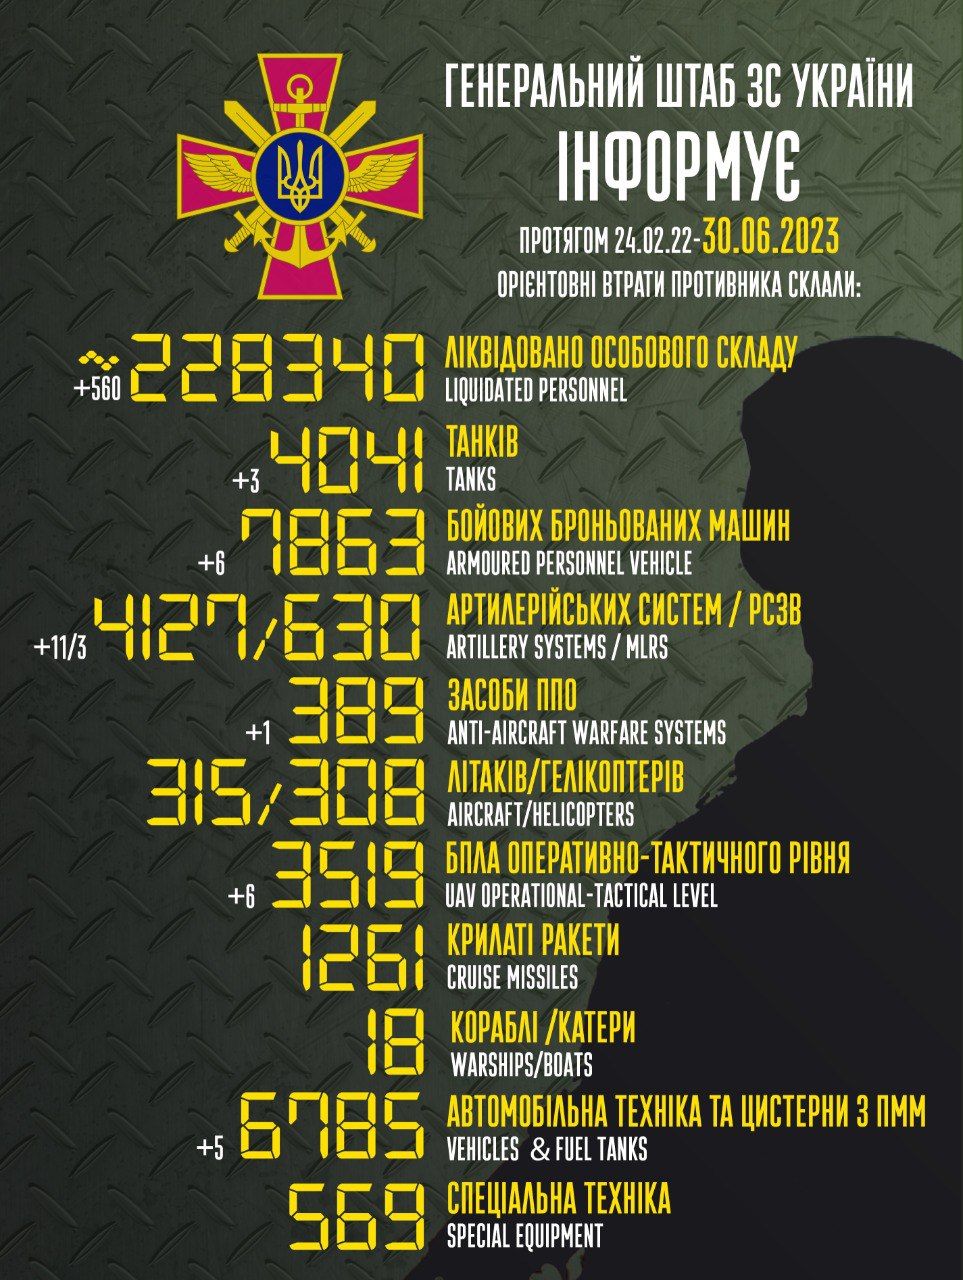 🔥+560 рашистов в статистике и минус 560 рашистов на территории Украины за последние сутки